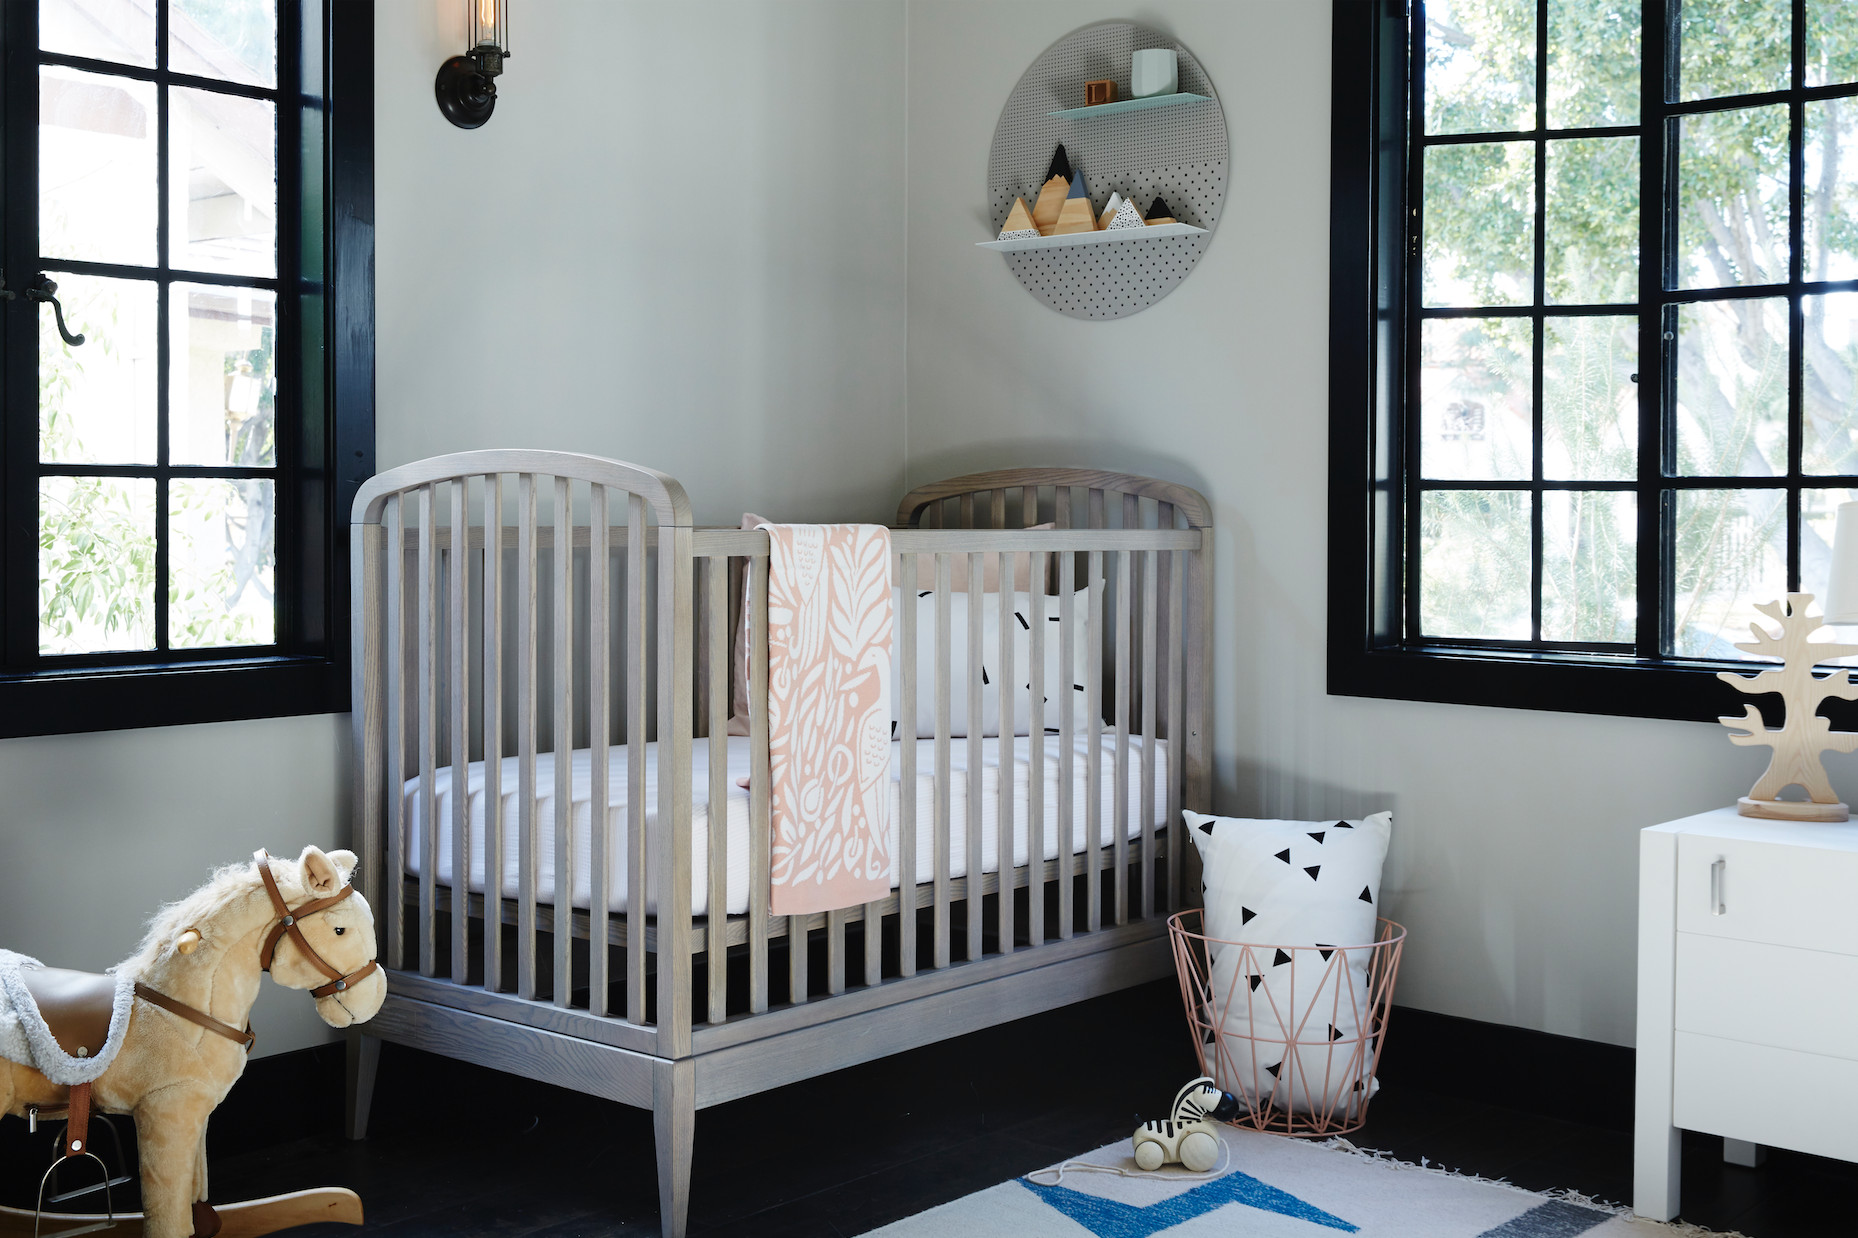 Baby Girl Nursery Decor Ideas
 7 Cute Baby Girl Rooms Nursery Decorating Ideas for Baby